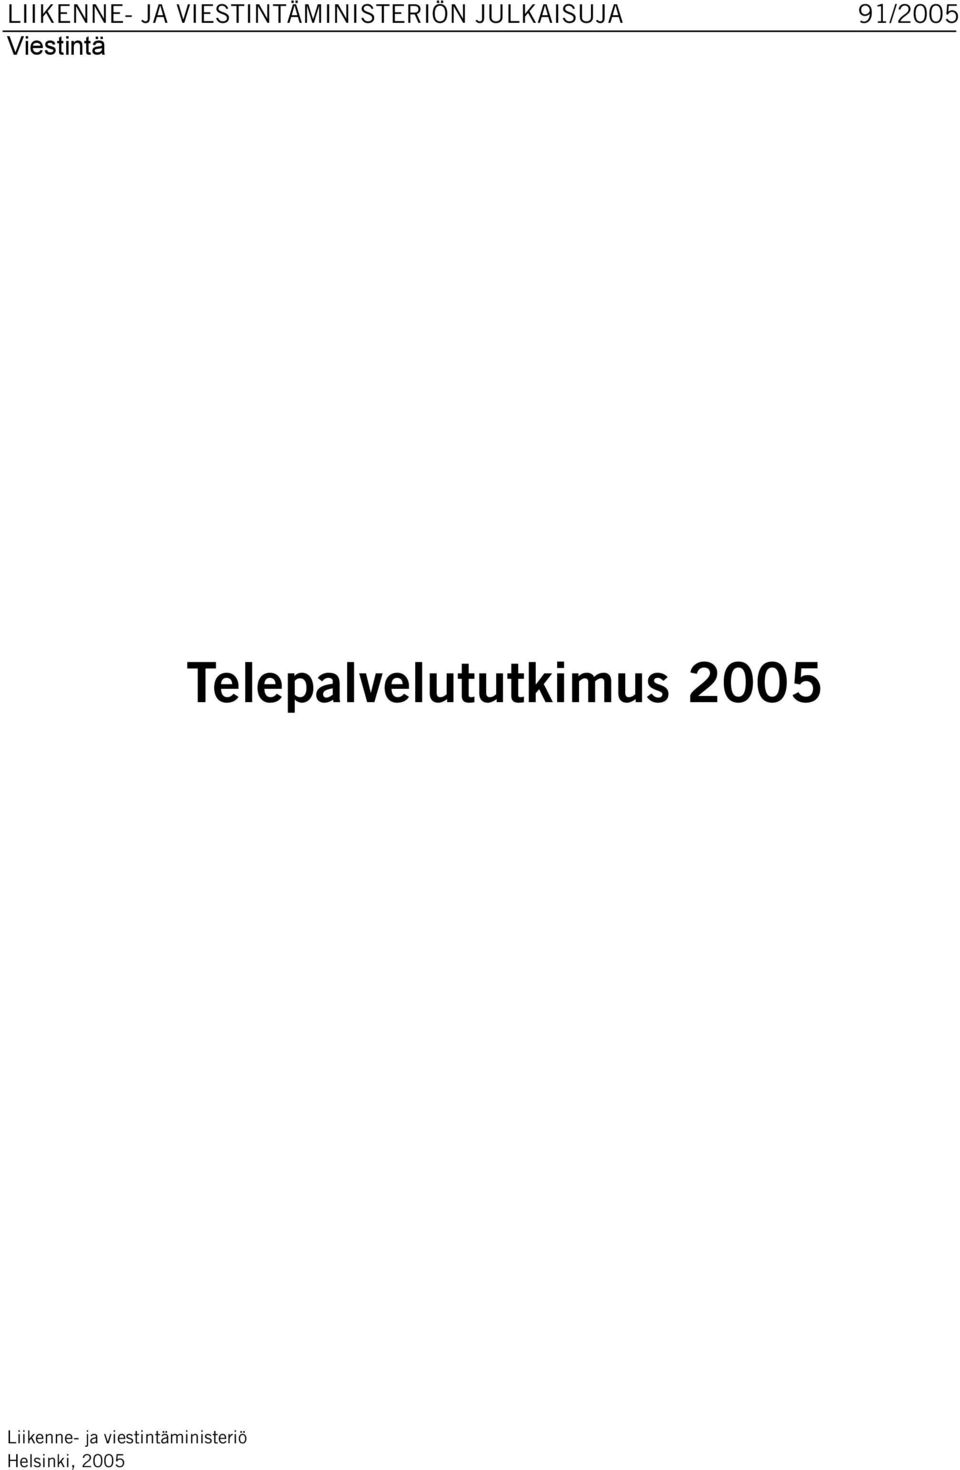 Telepalvelututkimus 2005